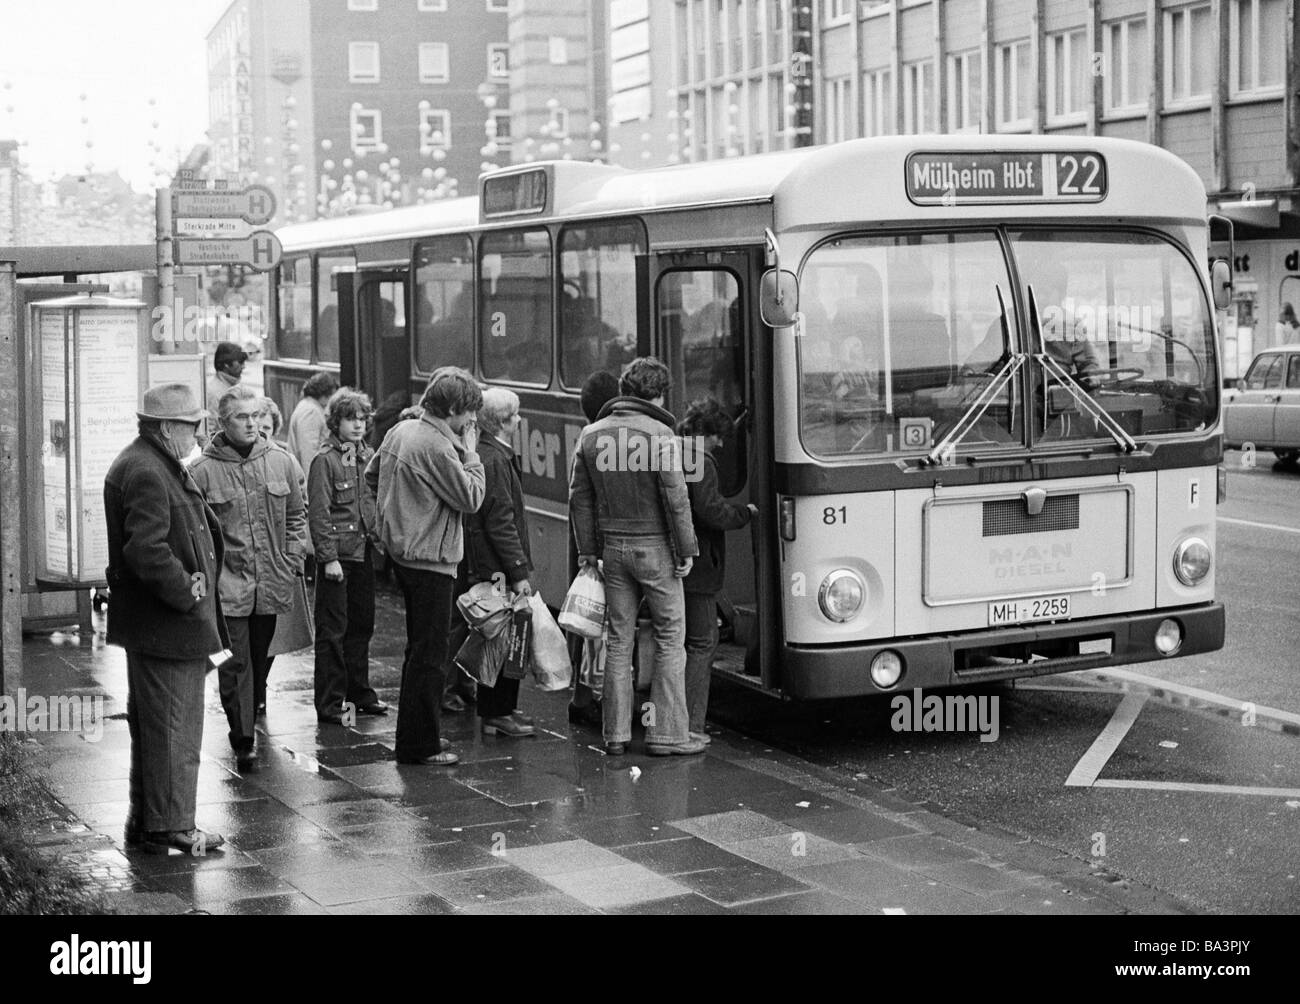 Années 70, photo en noir et blanc, le trafic routier, l'arrêt de bus, les passagers à bord d'un autobus, D-Oberhausen, D-Oberhausen-Sterkrade, Ruhr, Rhénanie du Nord-Westphalie Banque D'Images